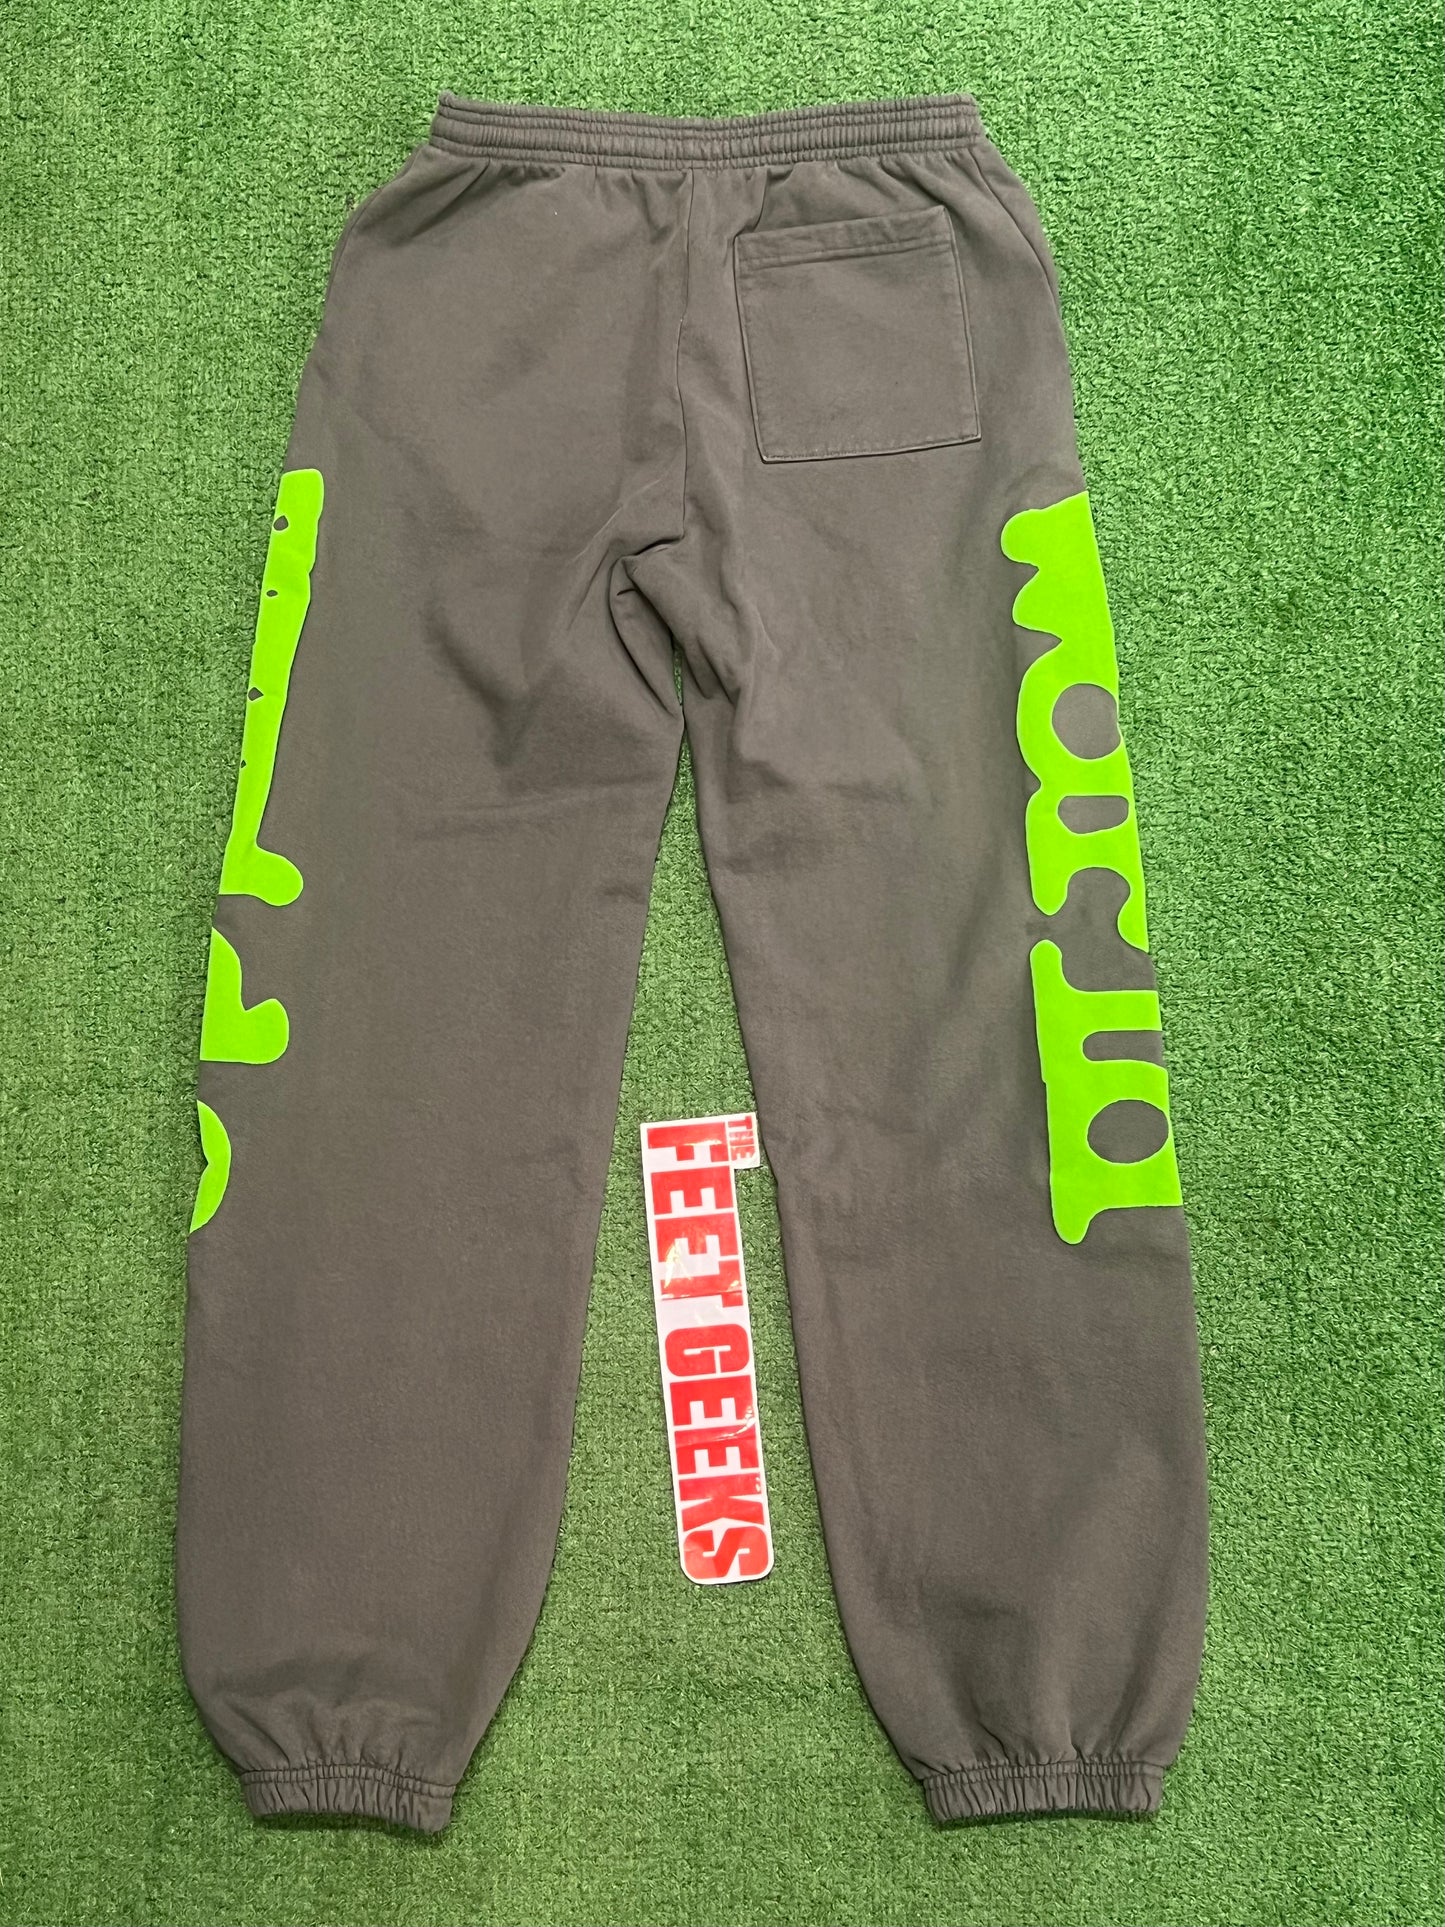 Men’s Sp5der Sweatpants Grey/Green Brand New